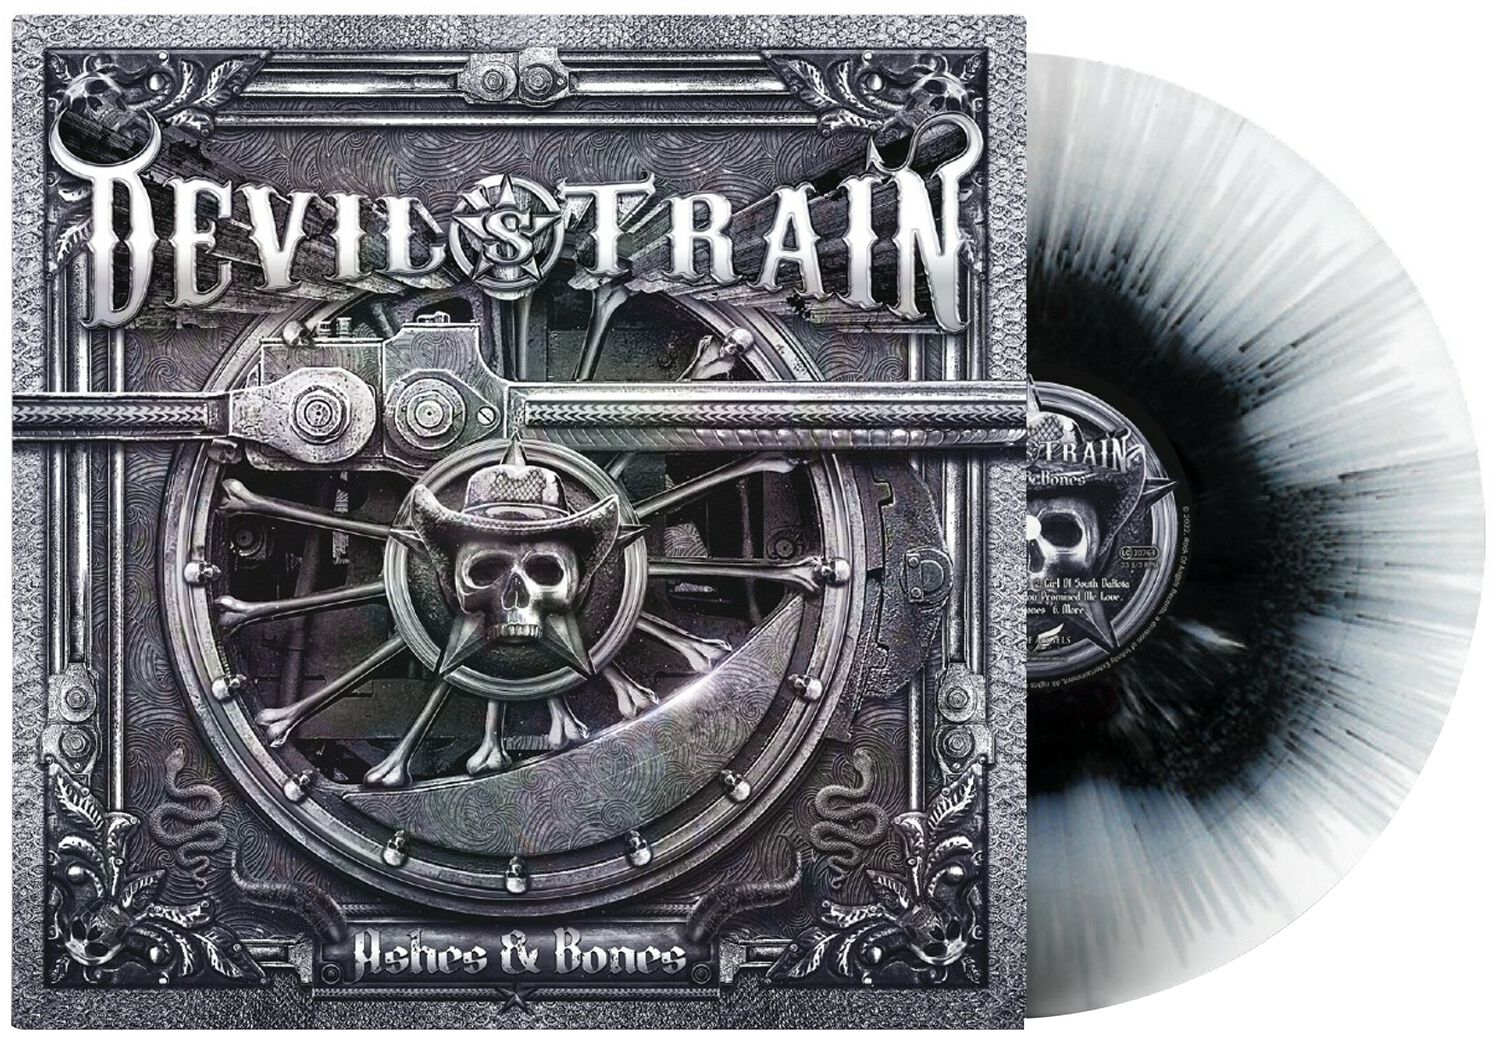 Devil's Train Ashes & Bones LP splattered